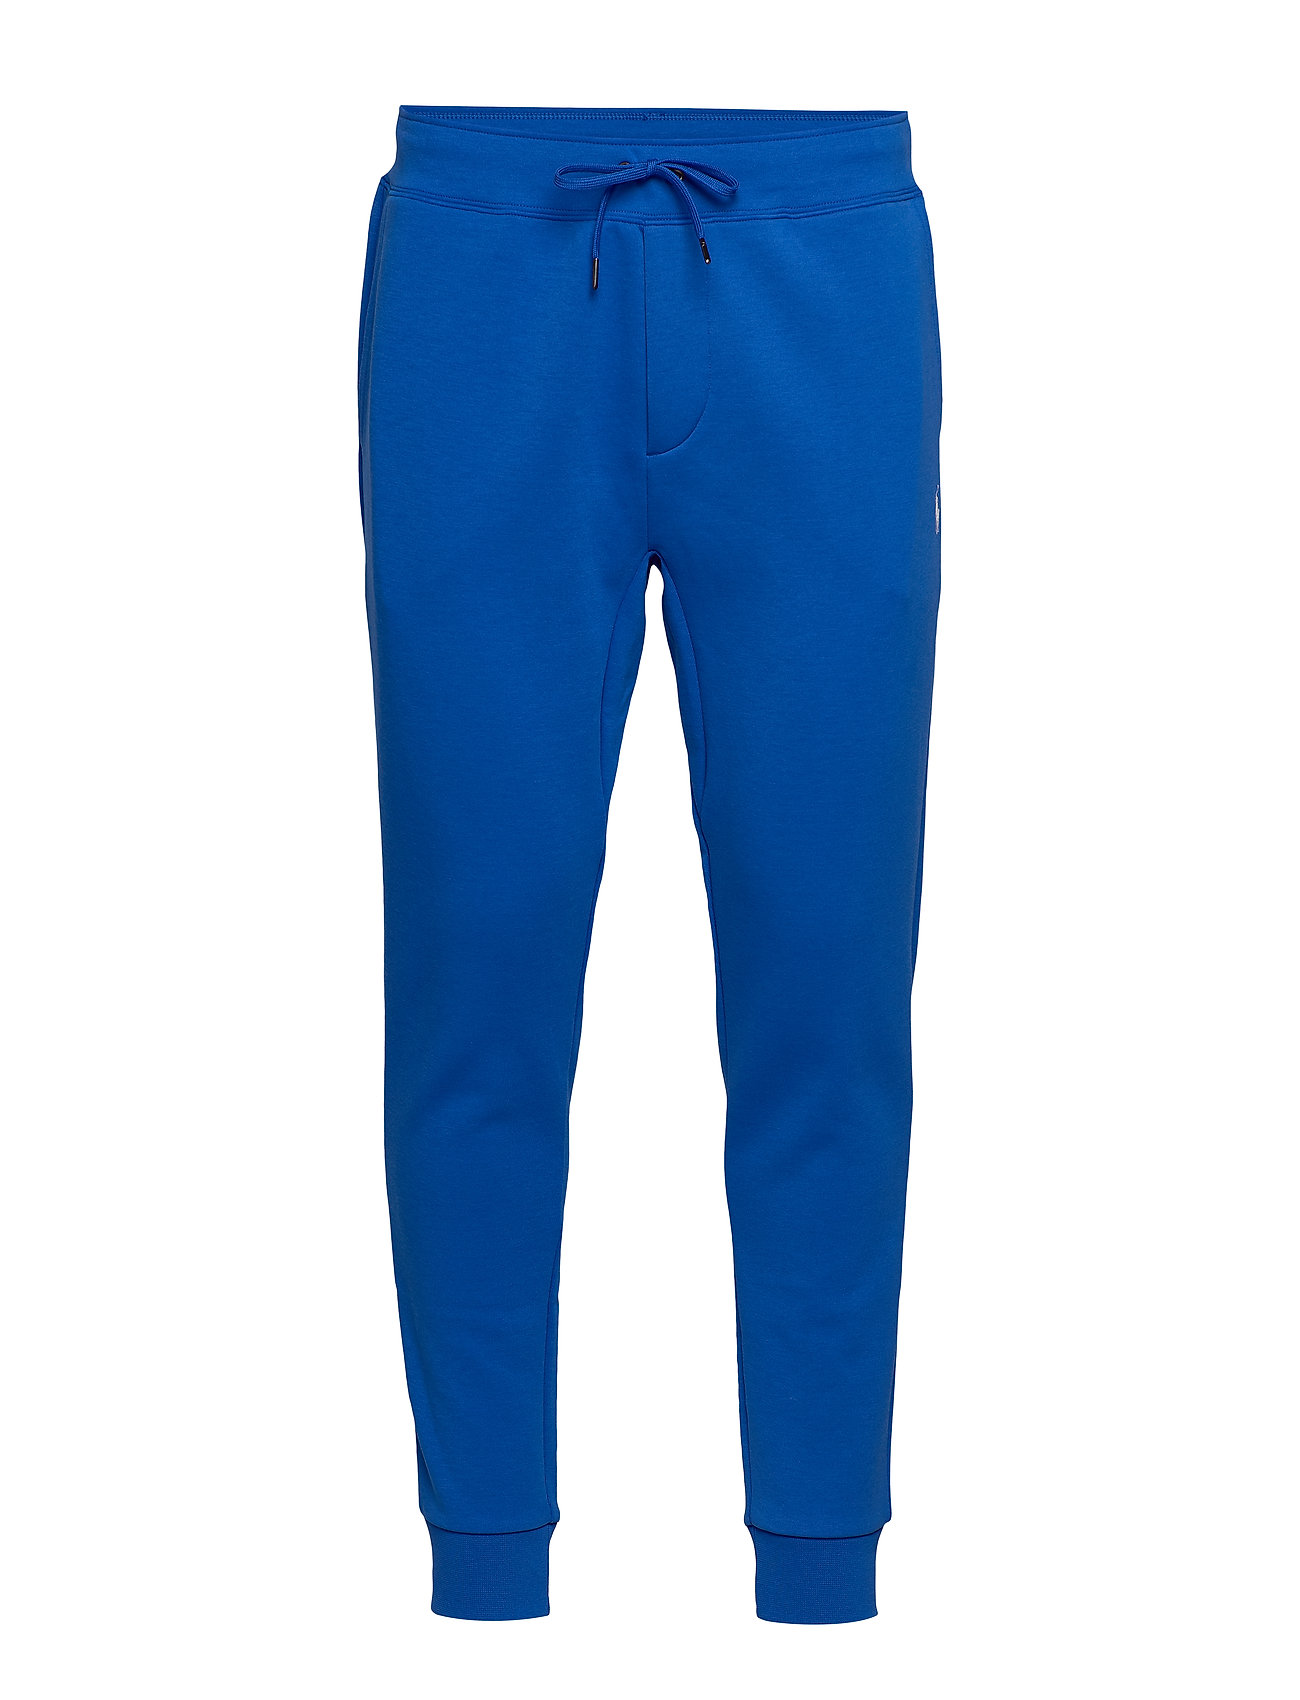 royal blue polo jogging suit